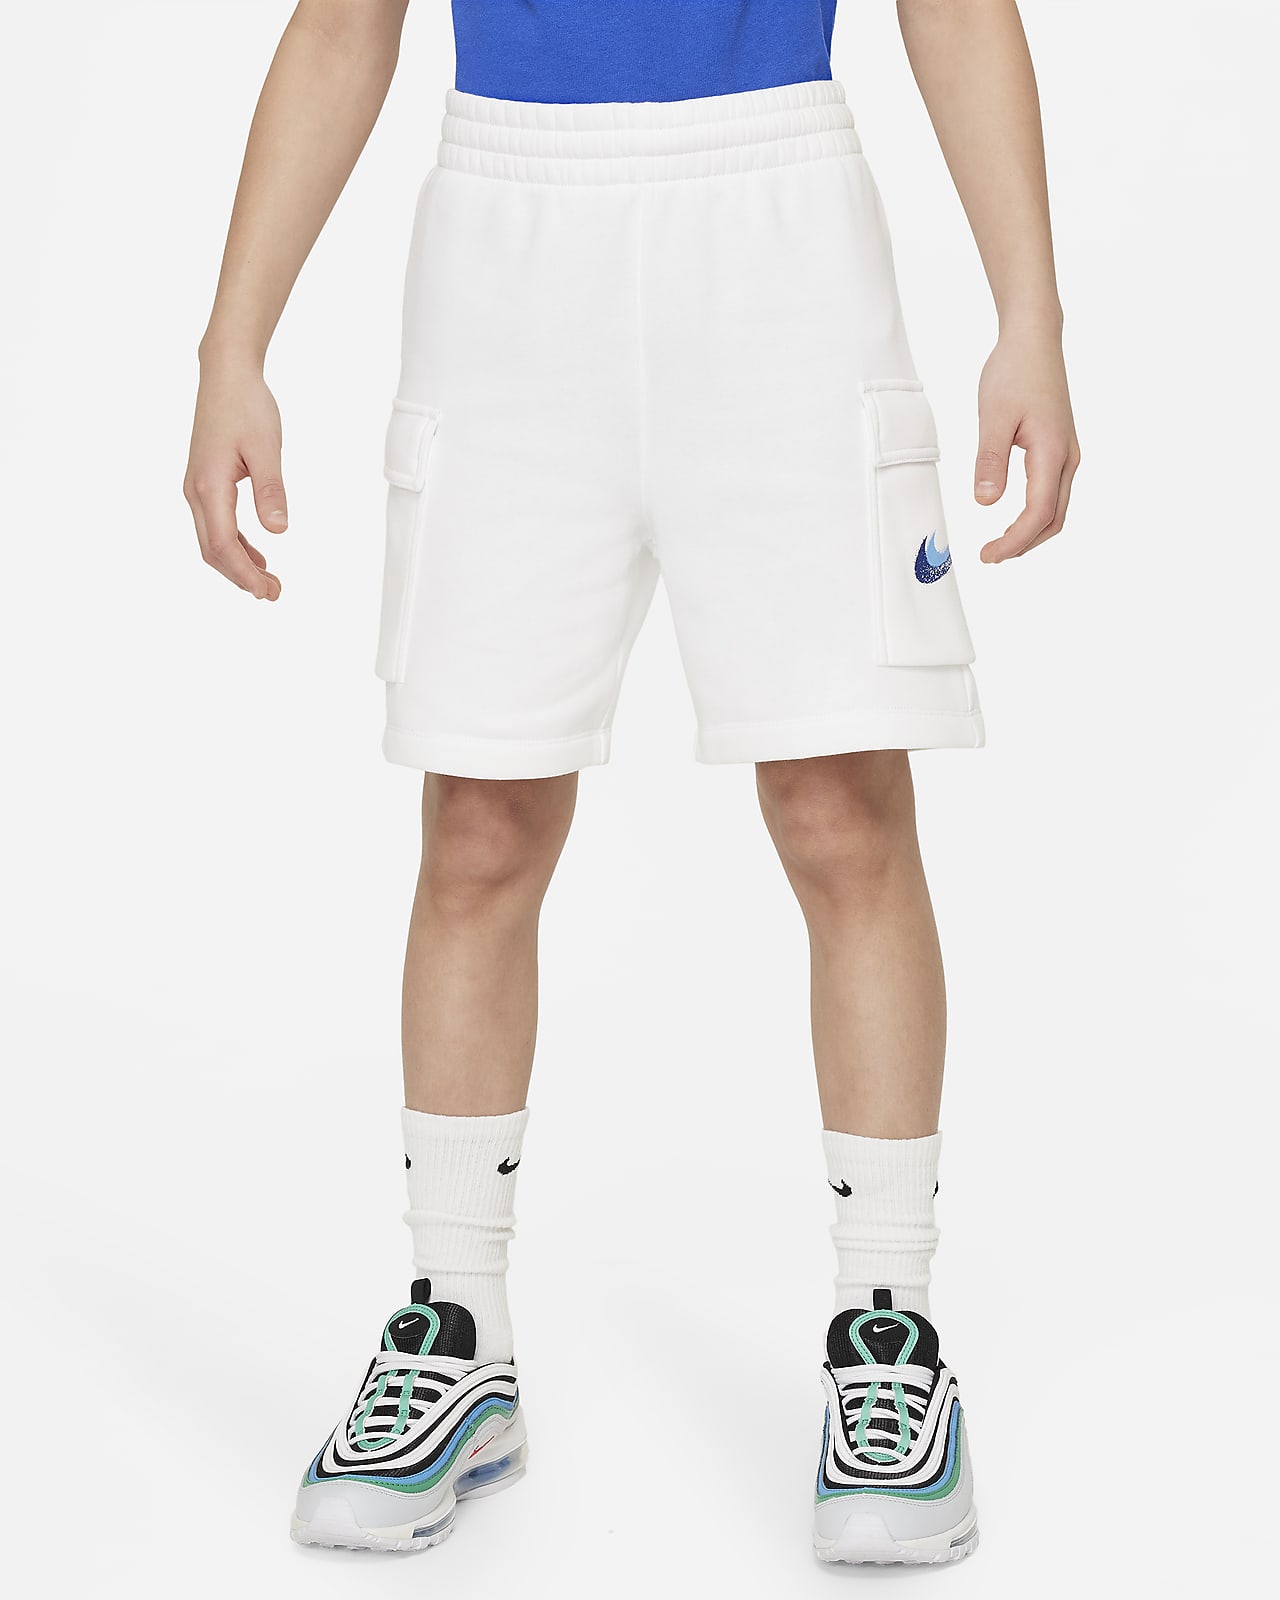 Nike Sportswear Standard Issue Pantalons curts de teixit Fleece - Nen